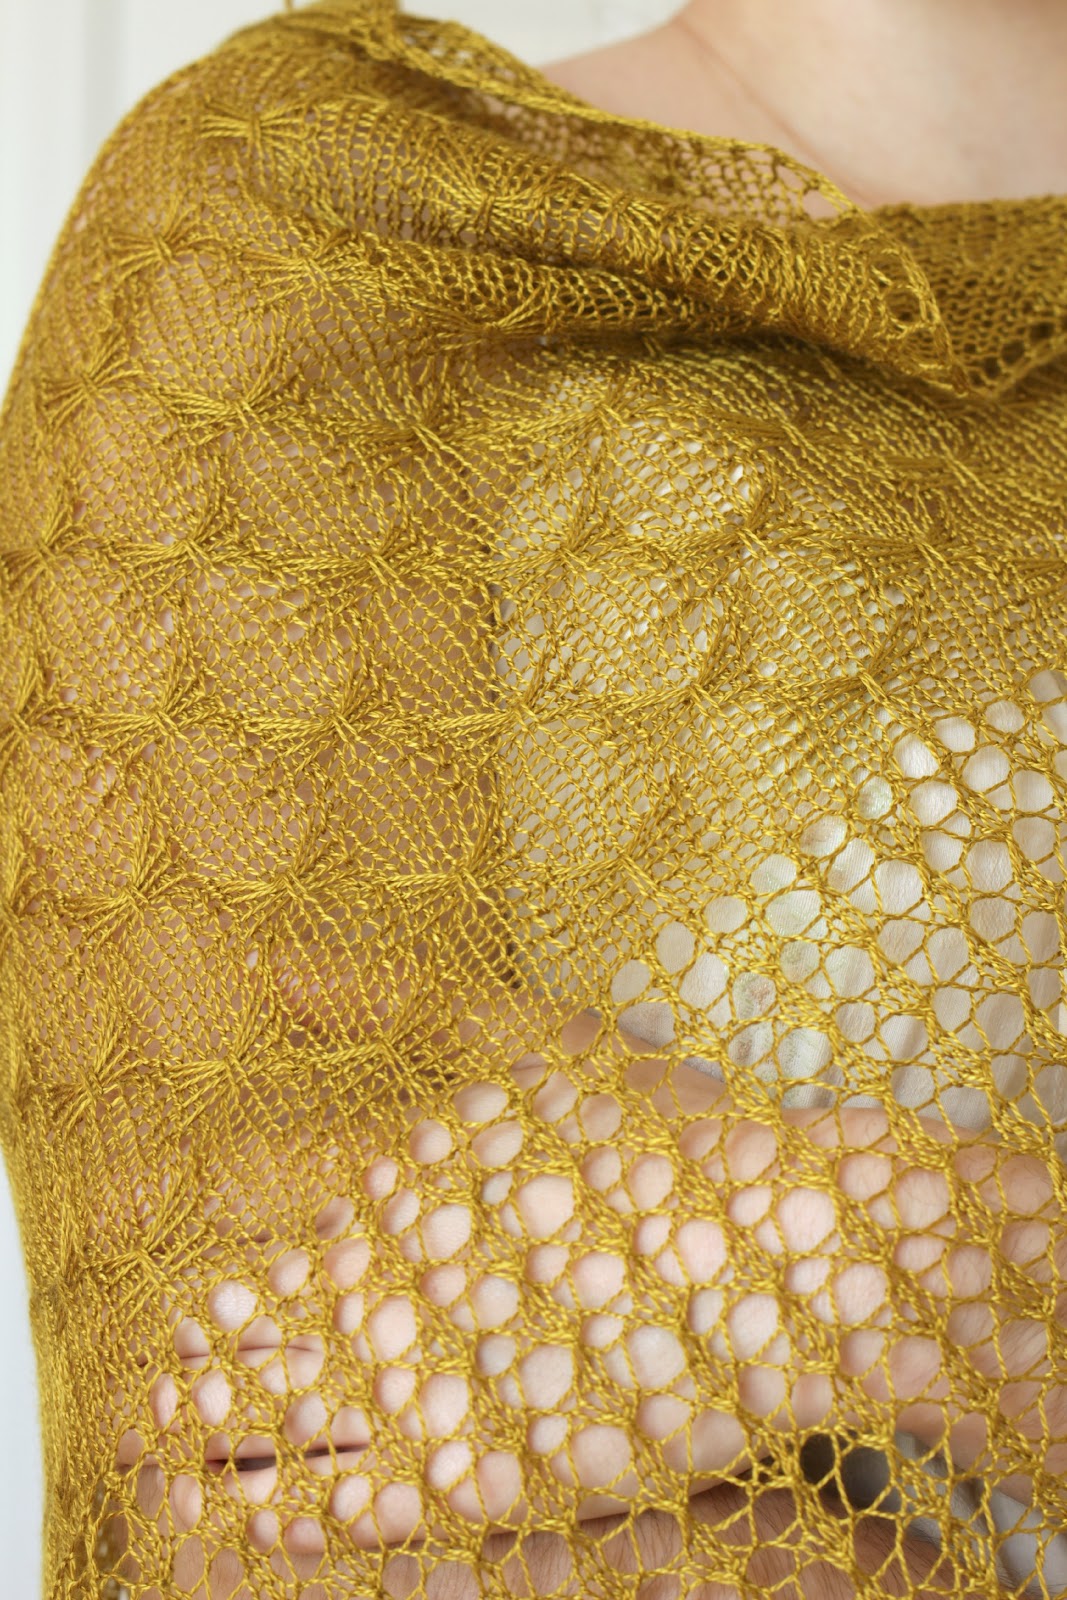 KGThreads blog: Release: Butterflies in Nets Pattern